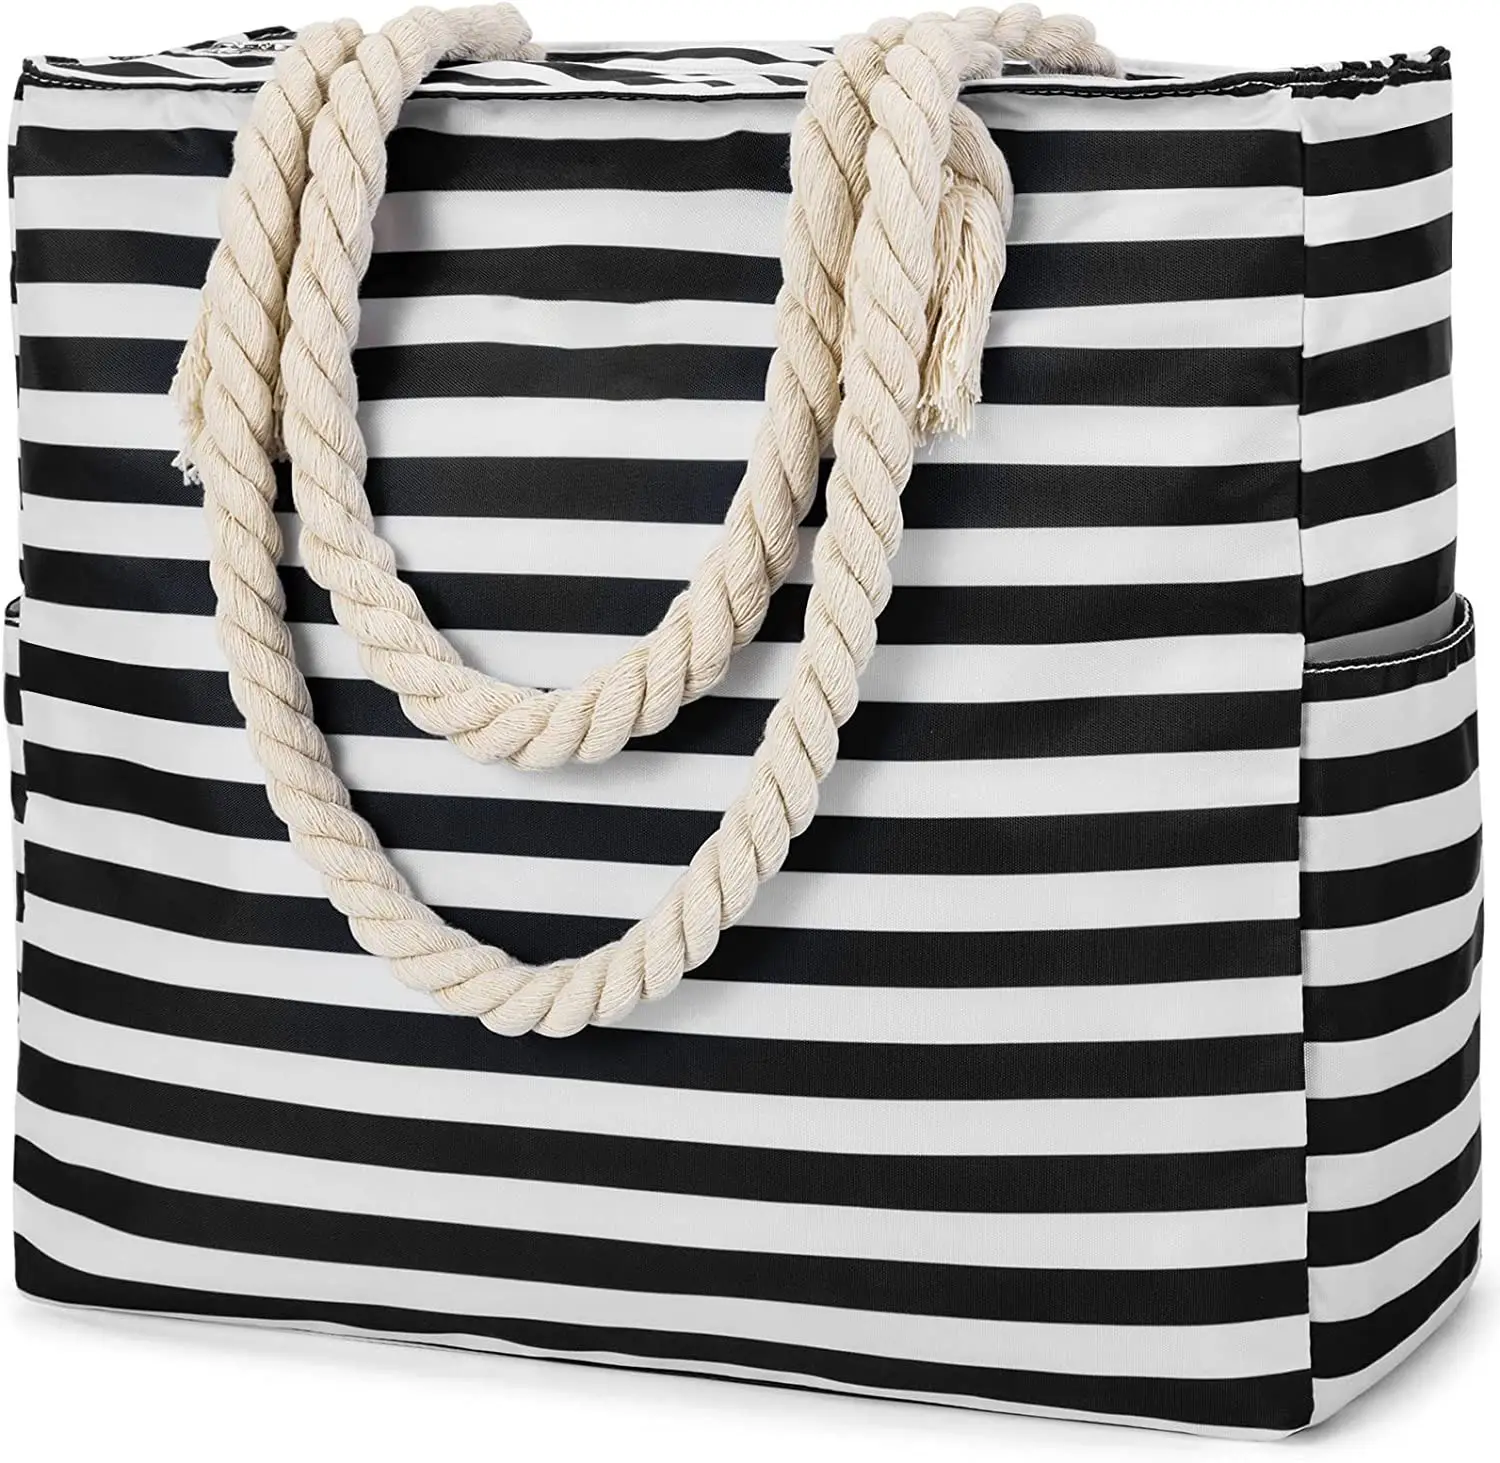 Wholesale Custom Waterproof Fashion Summer Women Handbags Ladies Beach Tote Bag